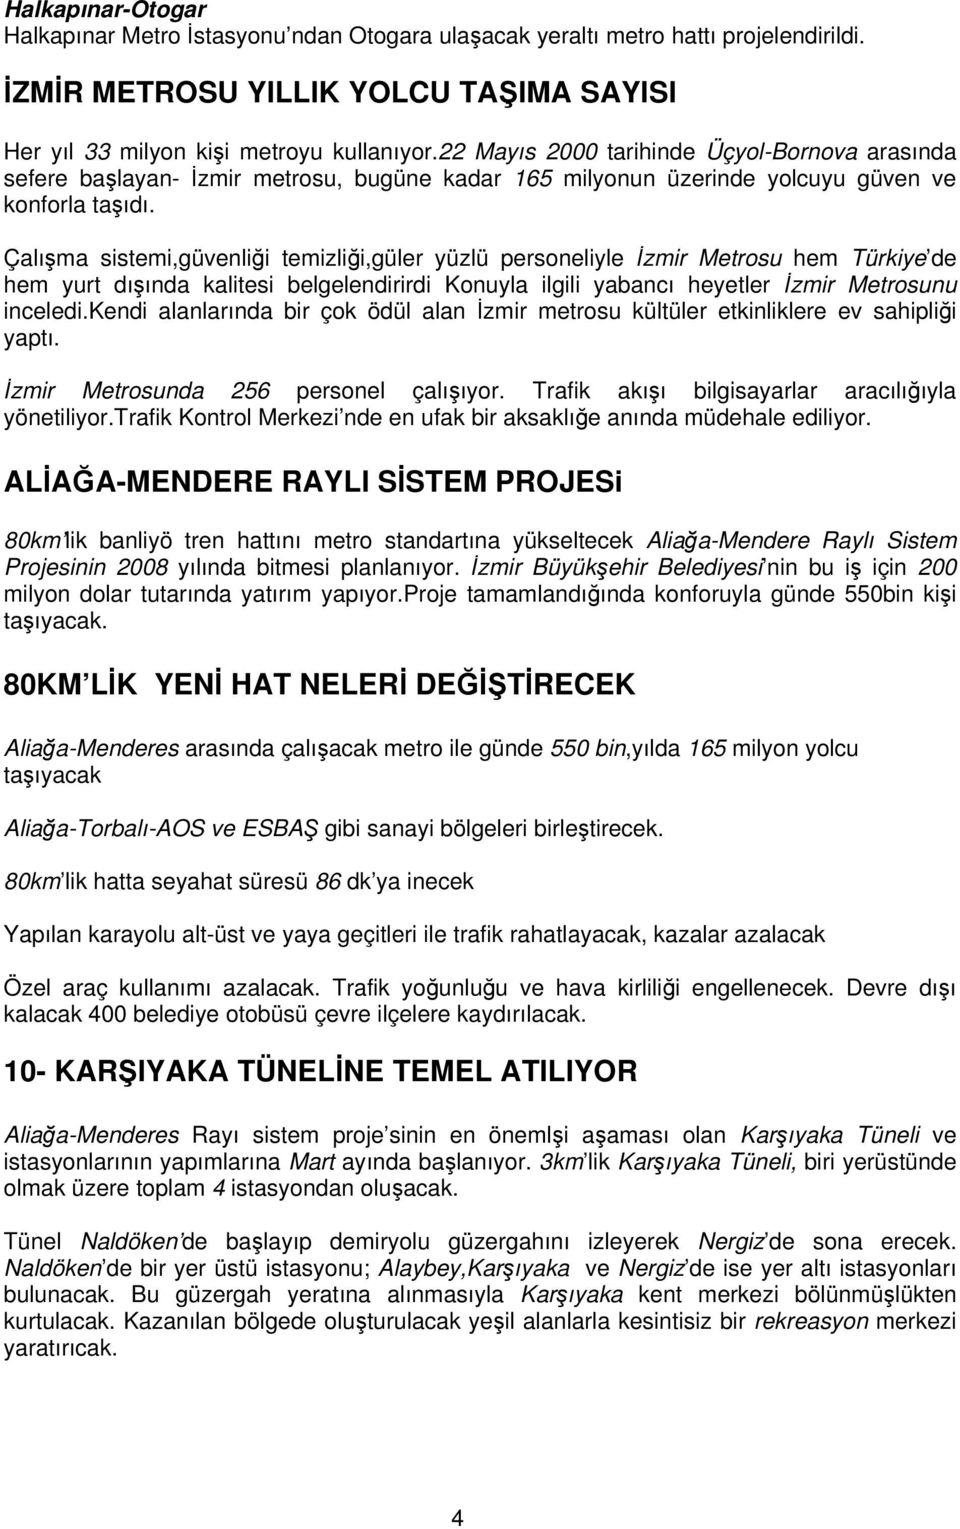 Çalışma sistemi,güvenliği temizliği,güler yüzlü personeliyle İzmir Metrosu hem Türkiye de hem yurt dışında kalitesi belgelendirirdi Konuyla ilgili yabancı heyetler İzmir Metrosunu inceledi.